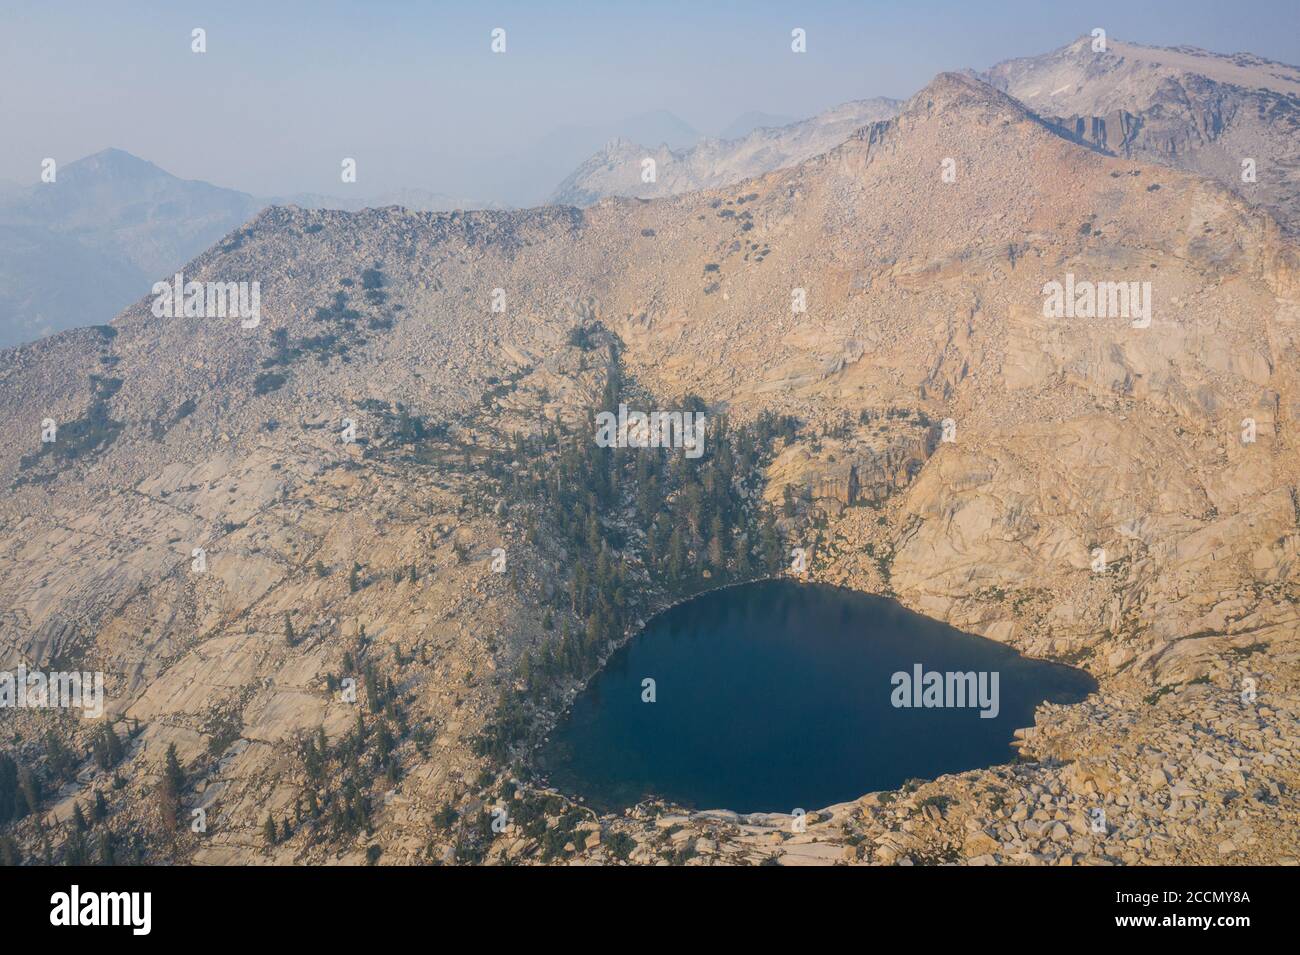 Un lago pintoresco se encuentra en medio de la naturaleza de las montañas de Sierra Nevada. Estas hermosas montañas de granito corren a lo largo del borde este de California. Foto de stock